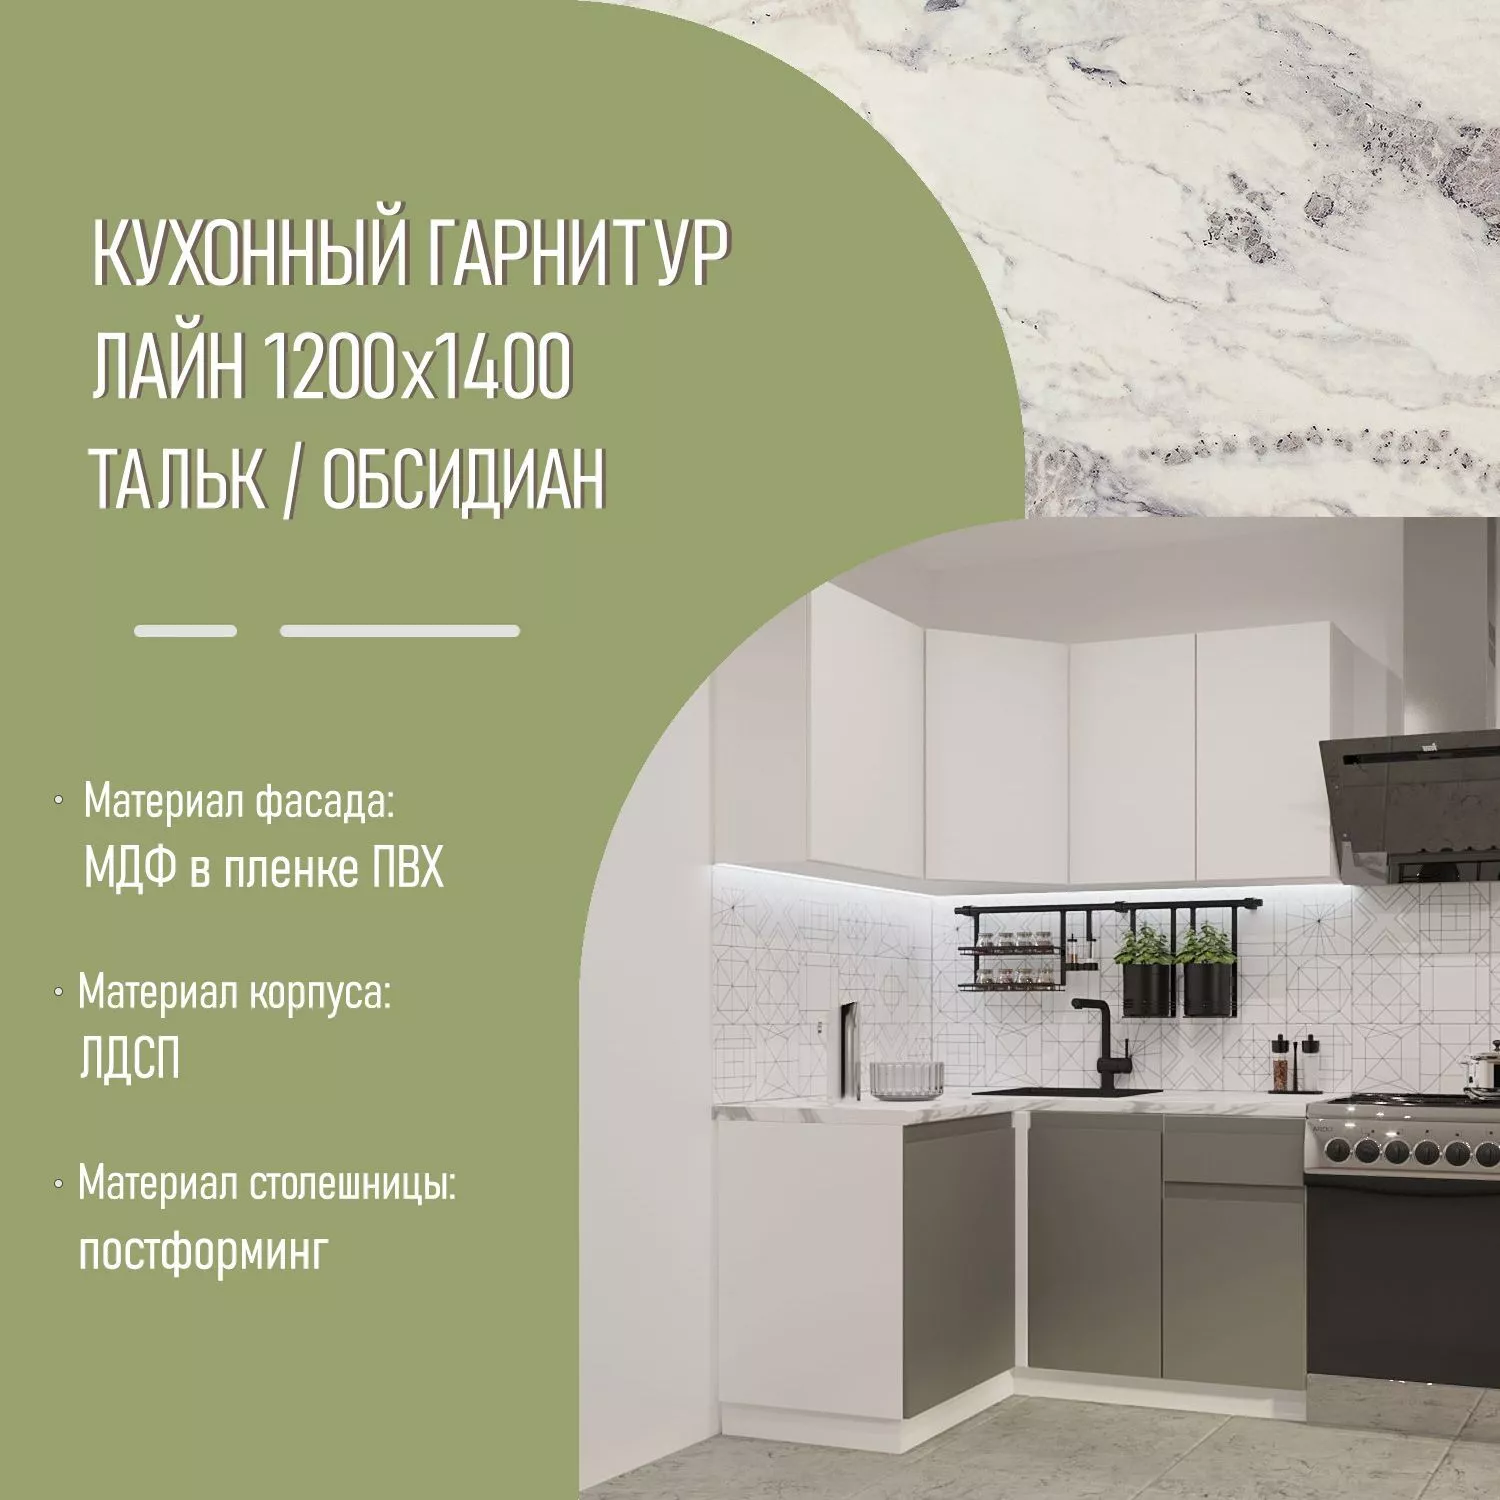 Кухонный гарнитур Тальк / Обсидиан Лайн 1200х1400 (арт.5)